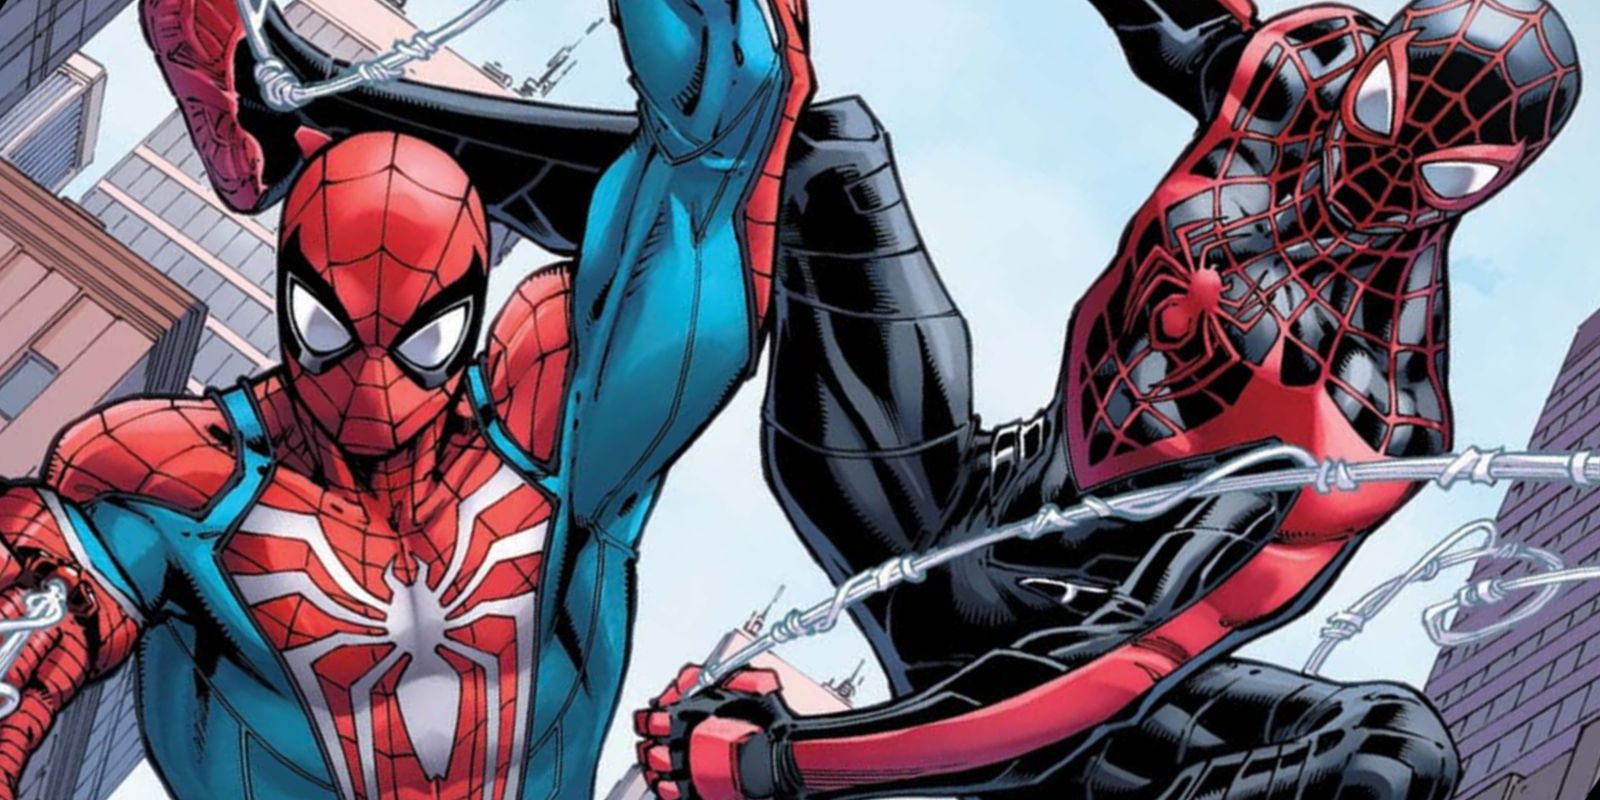 Spider-Men (both of 'em)